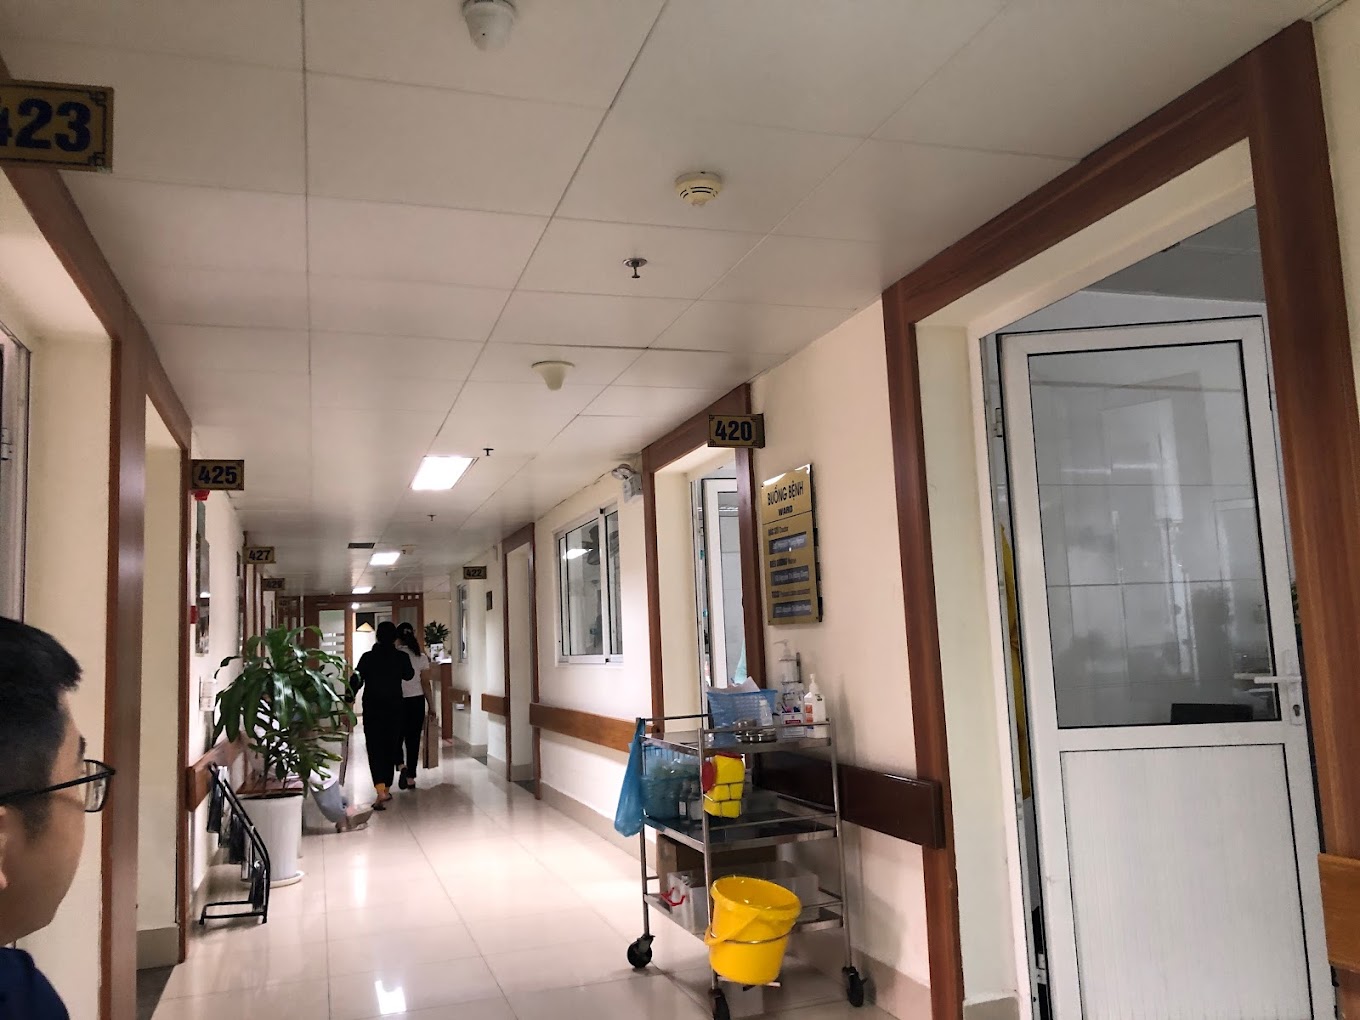 Bệnh viện hữu nghị Việt Đức